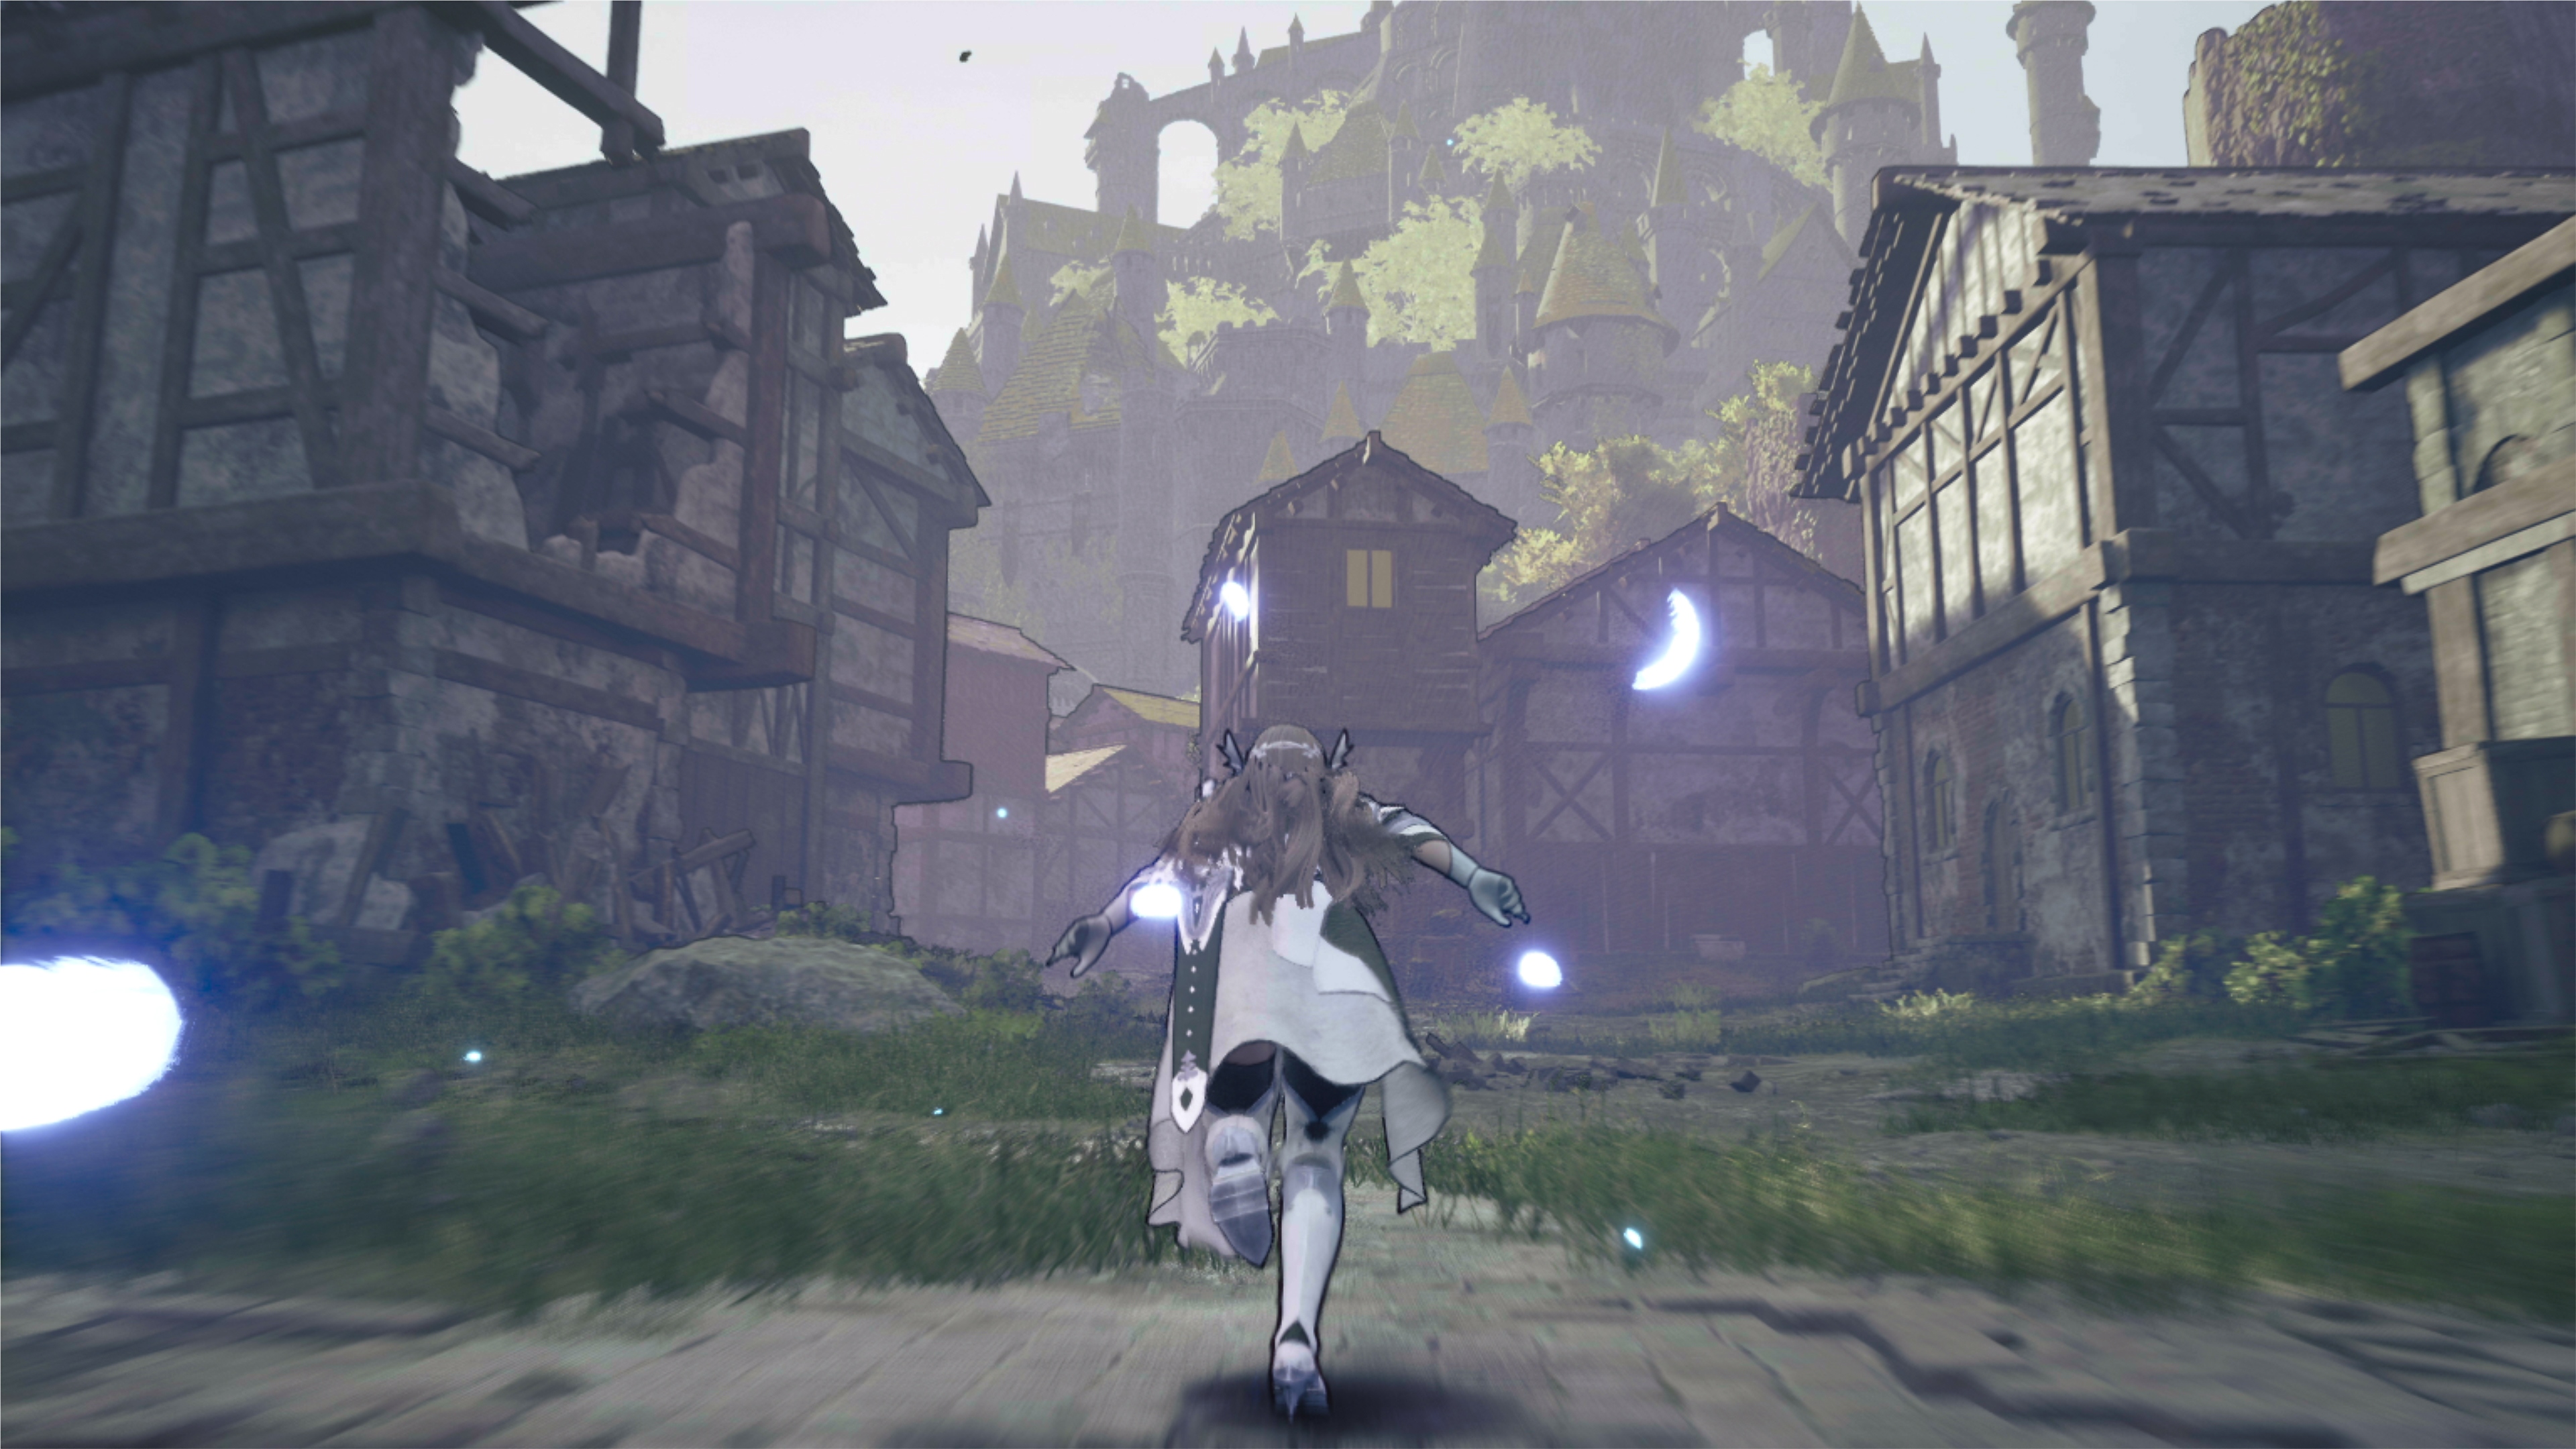 Valkyrie Elysium - Capture d'écran montrant un personnage courir dans un village en ruines